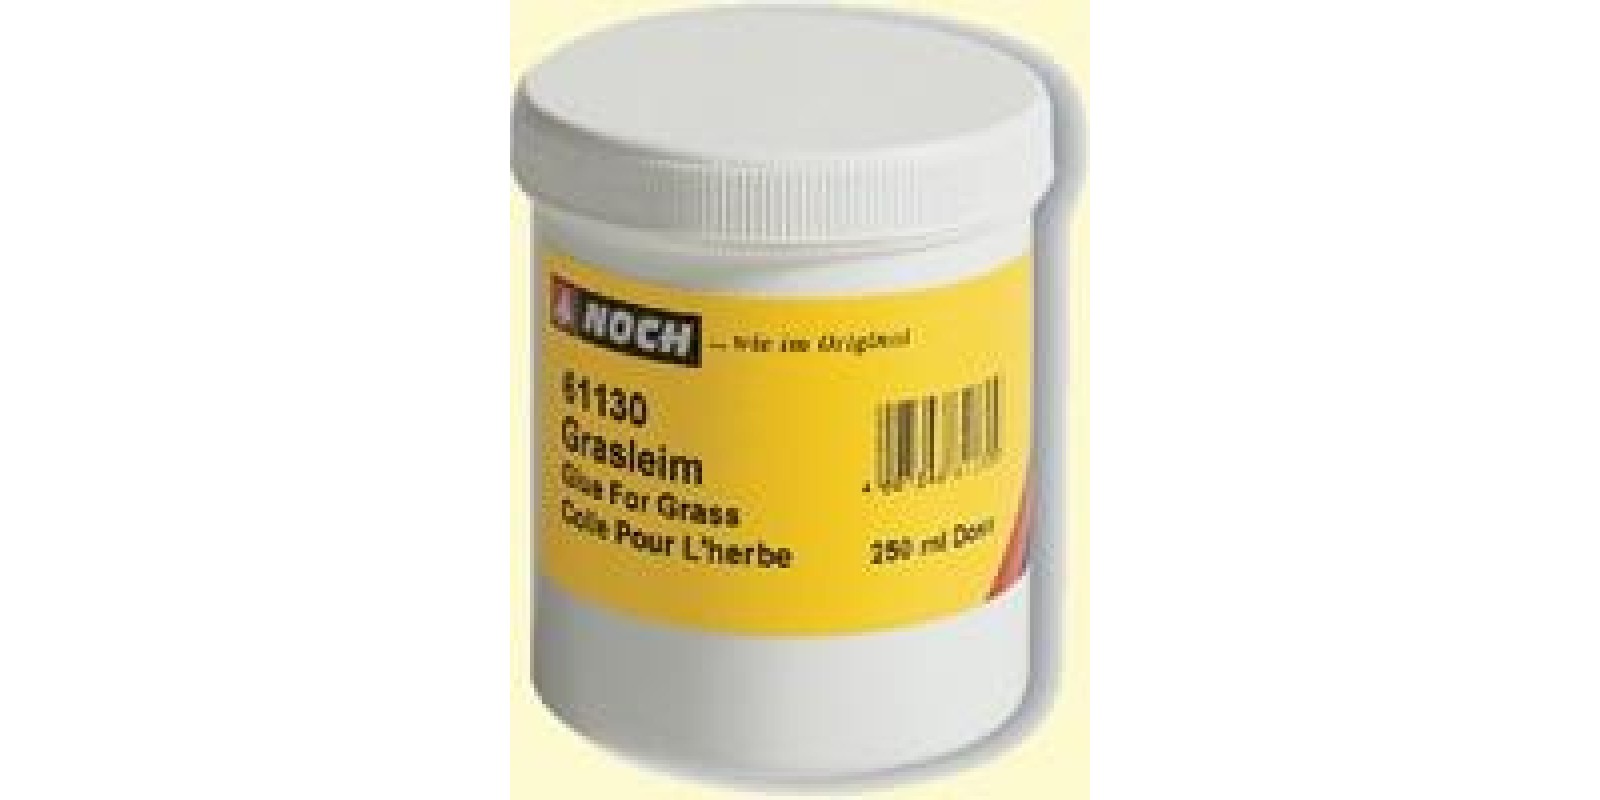  No61130 Grass Glue, 250 ml 